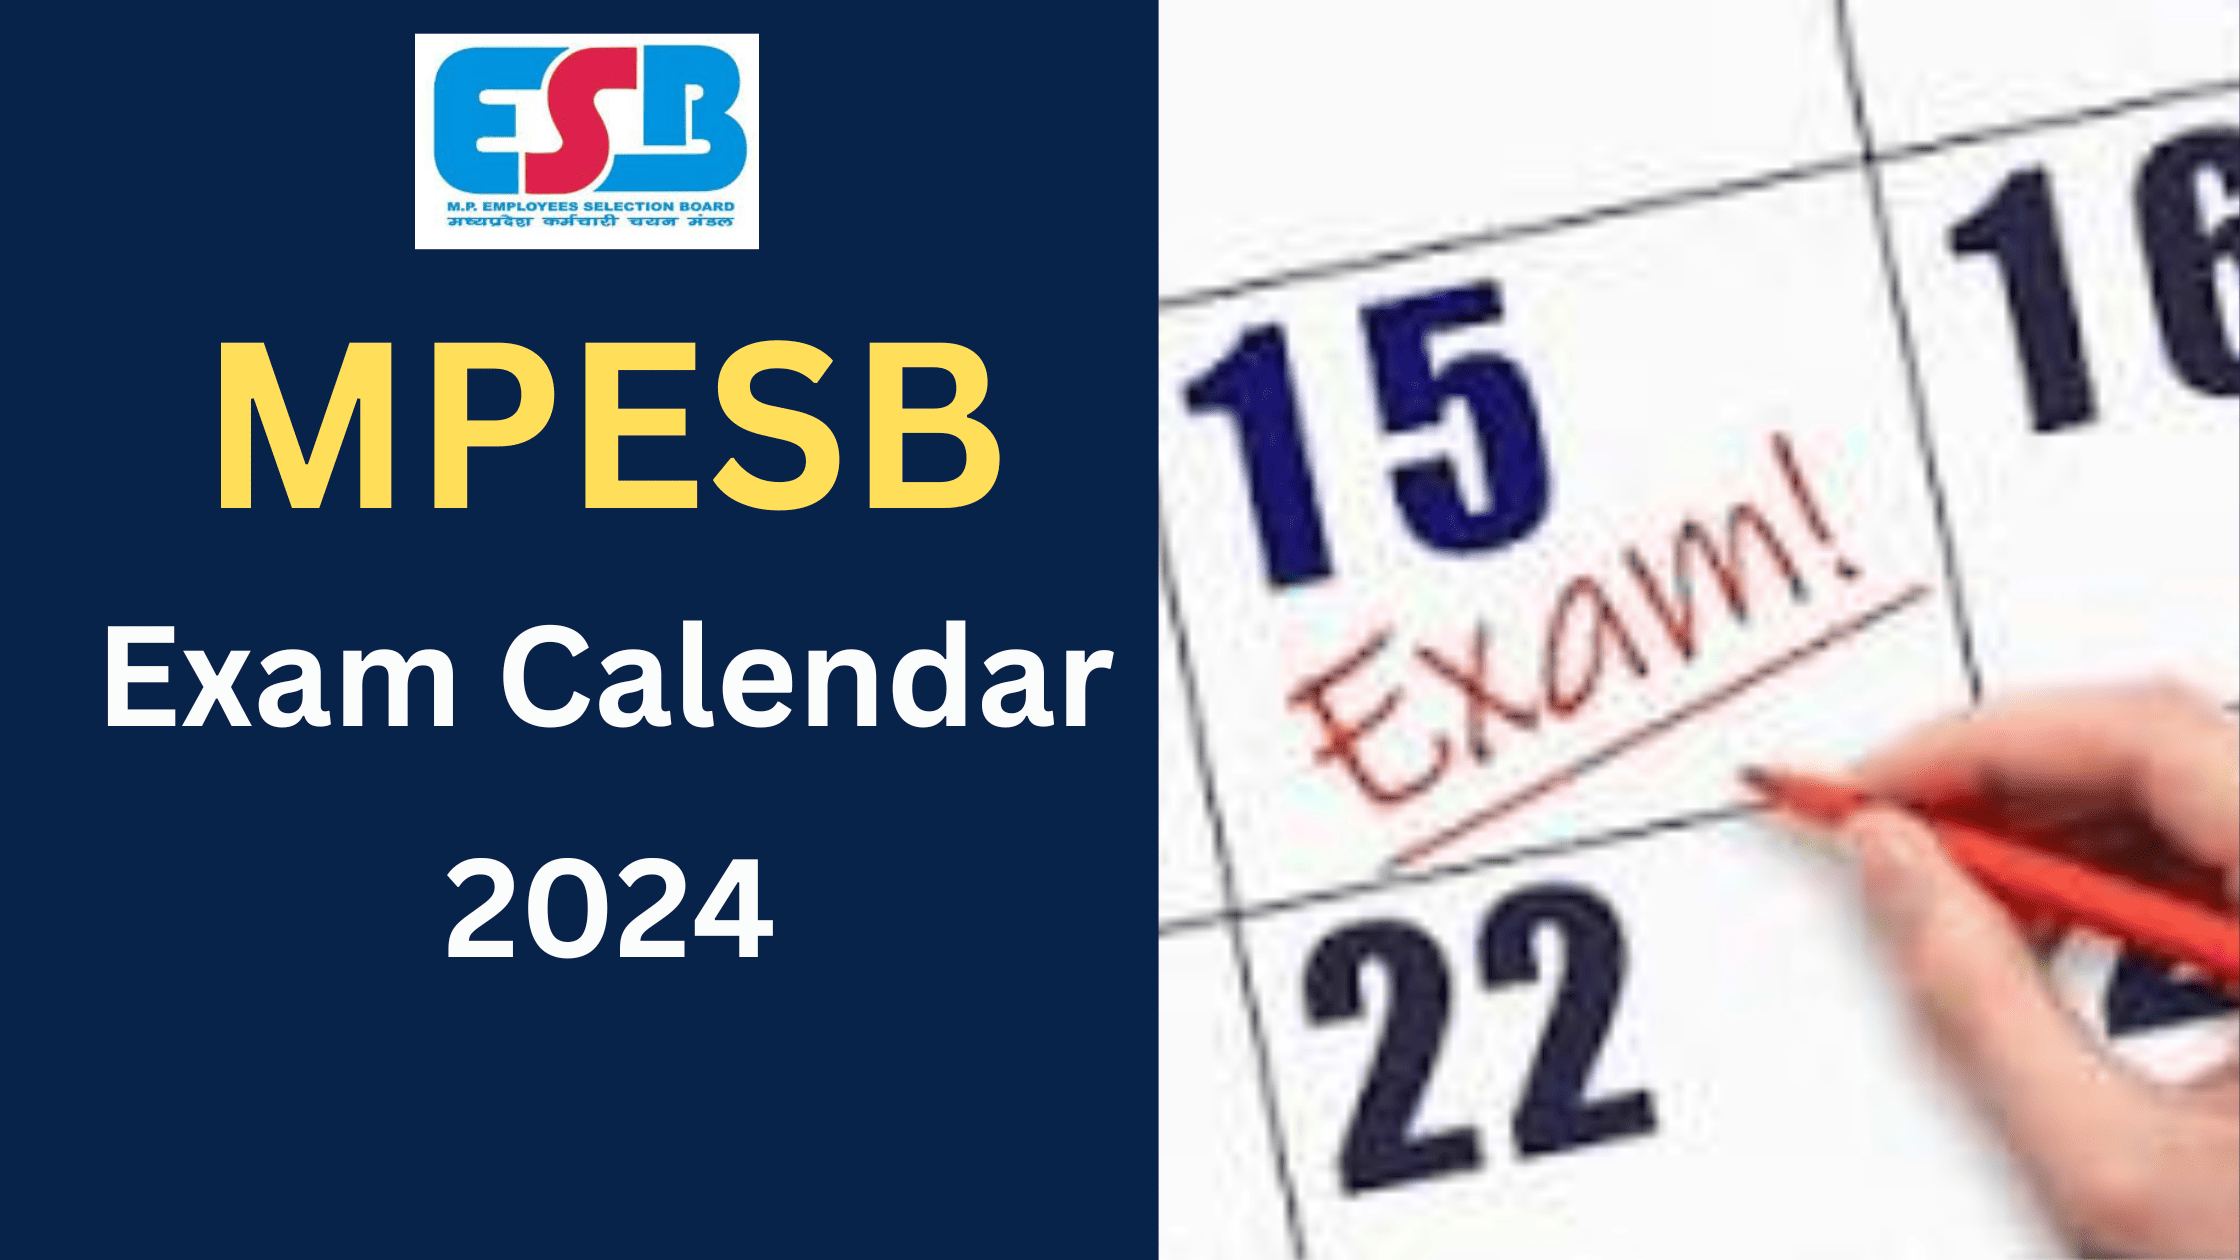 MPESB Exam Calendar 2024